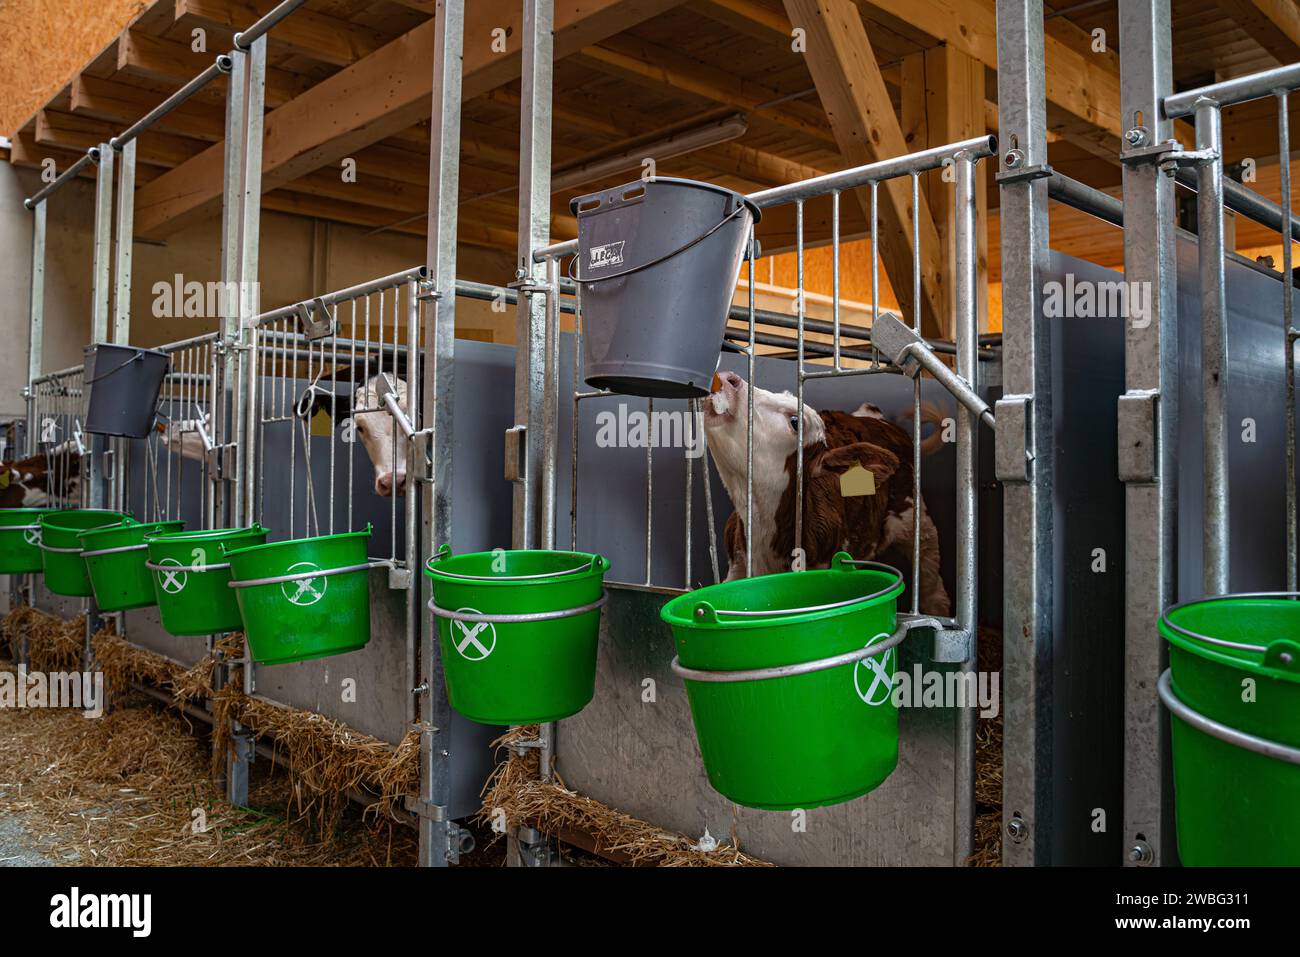 Kälber in ihren Aufzuchtboxen in einem separatem Indoor-Kälberstall mit davor angebrachten Milcheimern. Die Aufzucht von kleinen Kälbern ist ein herausfordernder Zeitraum in der Rinderzucht, da die Jungtiere insbesondere in den ersten Lebenswochen sehr anfällig für Infektionskrankheiten sind. Region Allgäu Bayern Deutschland *** Kälber in ihren Aufzuchtbuchten in einem separaten Kälberstall mit Milcheimern vor der Aufzucht kleiner Kälber ist eine schwierige Phase in der Rinderzucht, da die Jungtiere sehr anfällig für Infektionskrankheiten sind. besonders in den ersten Lebenswochen Reg Stockfoto